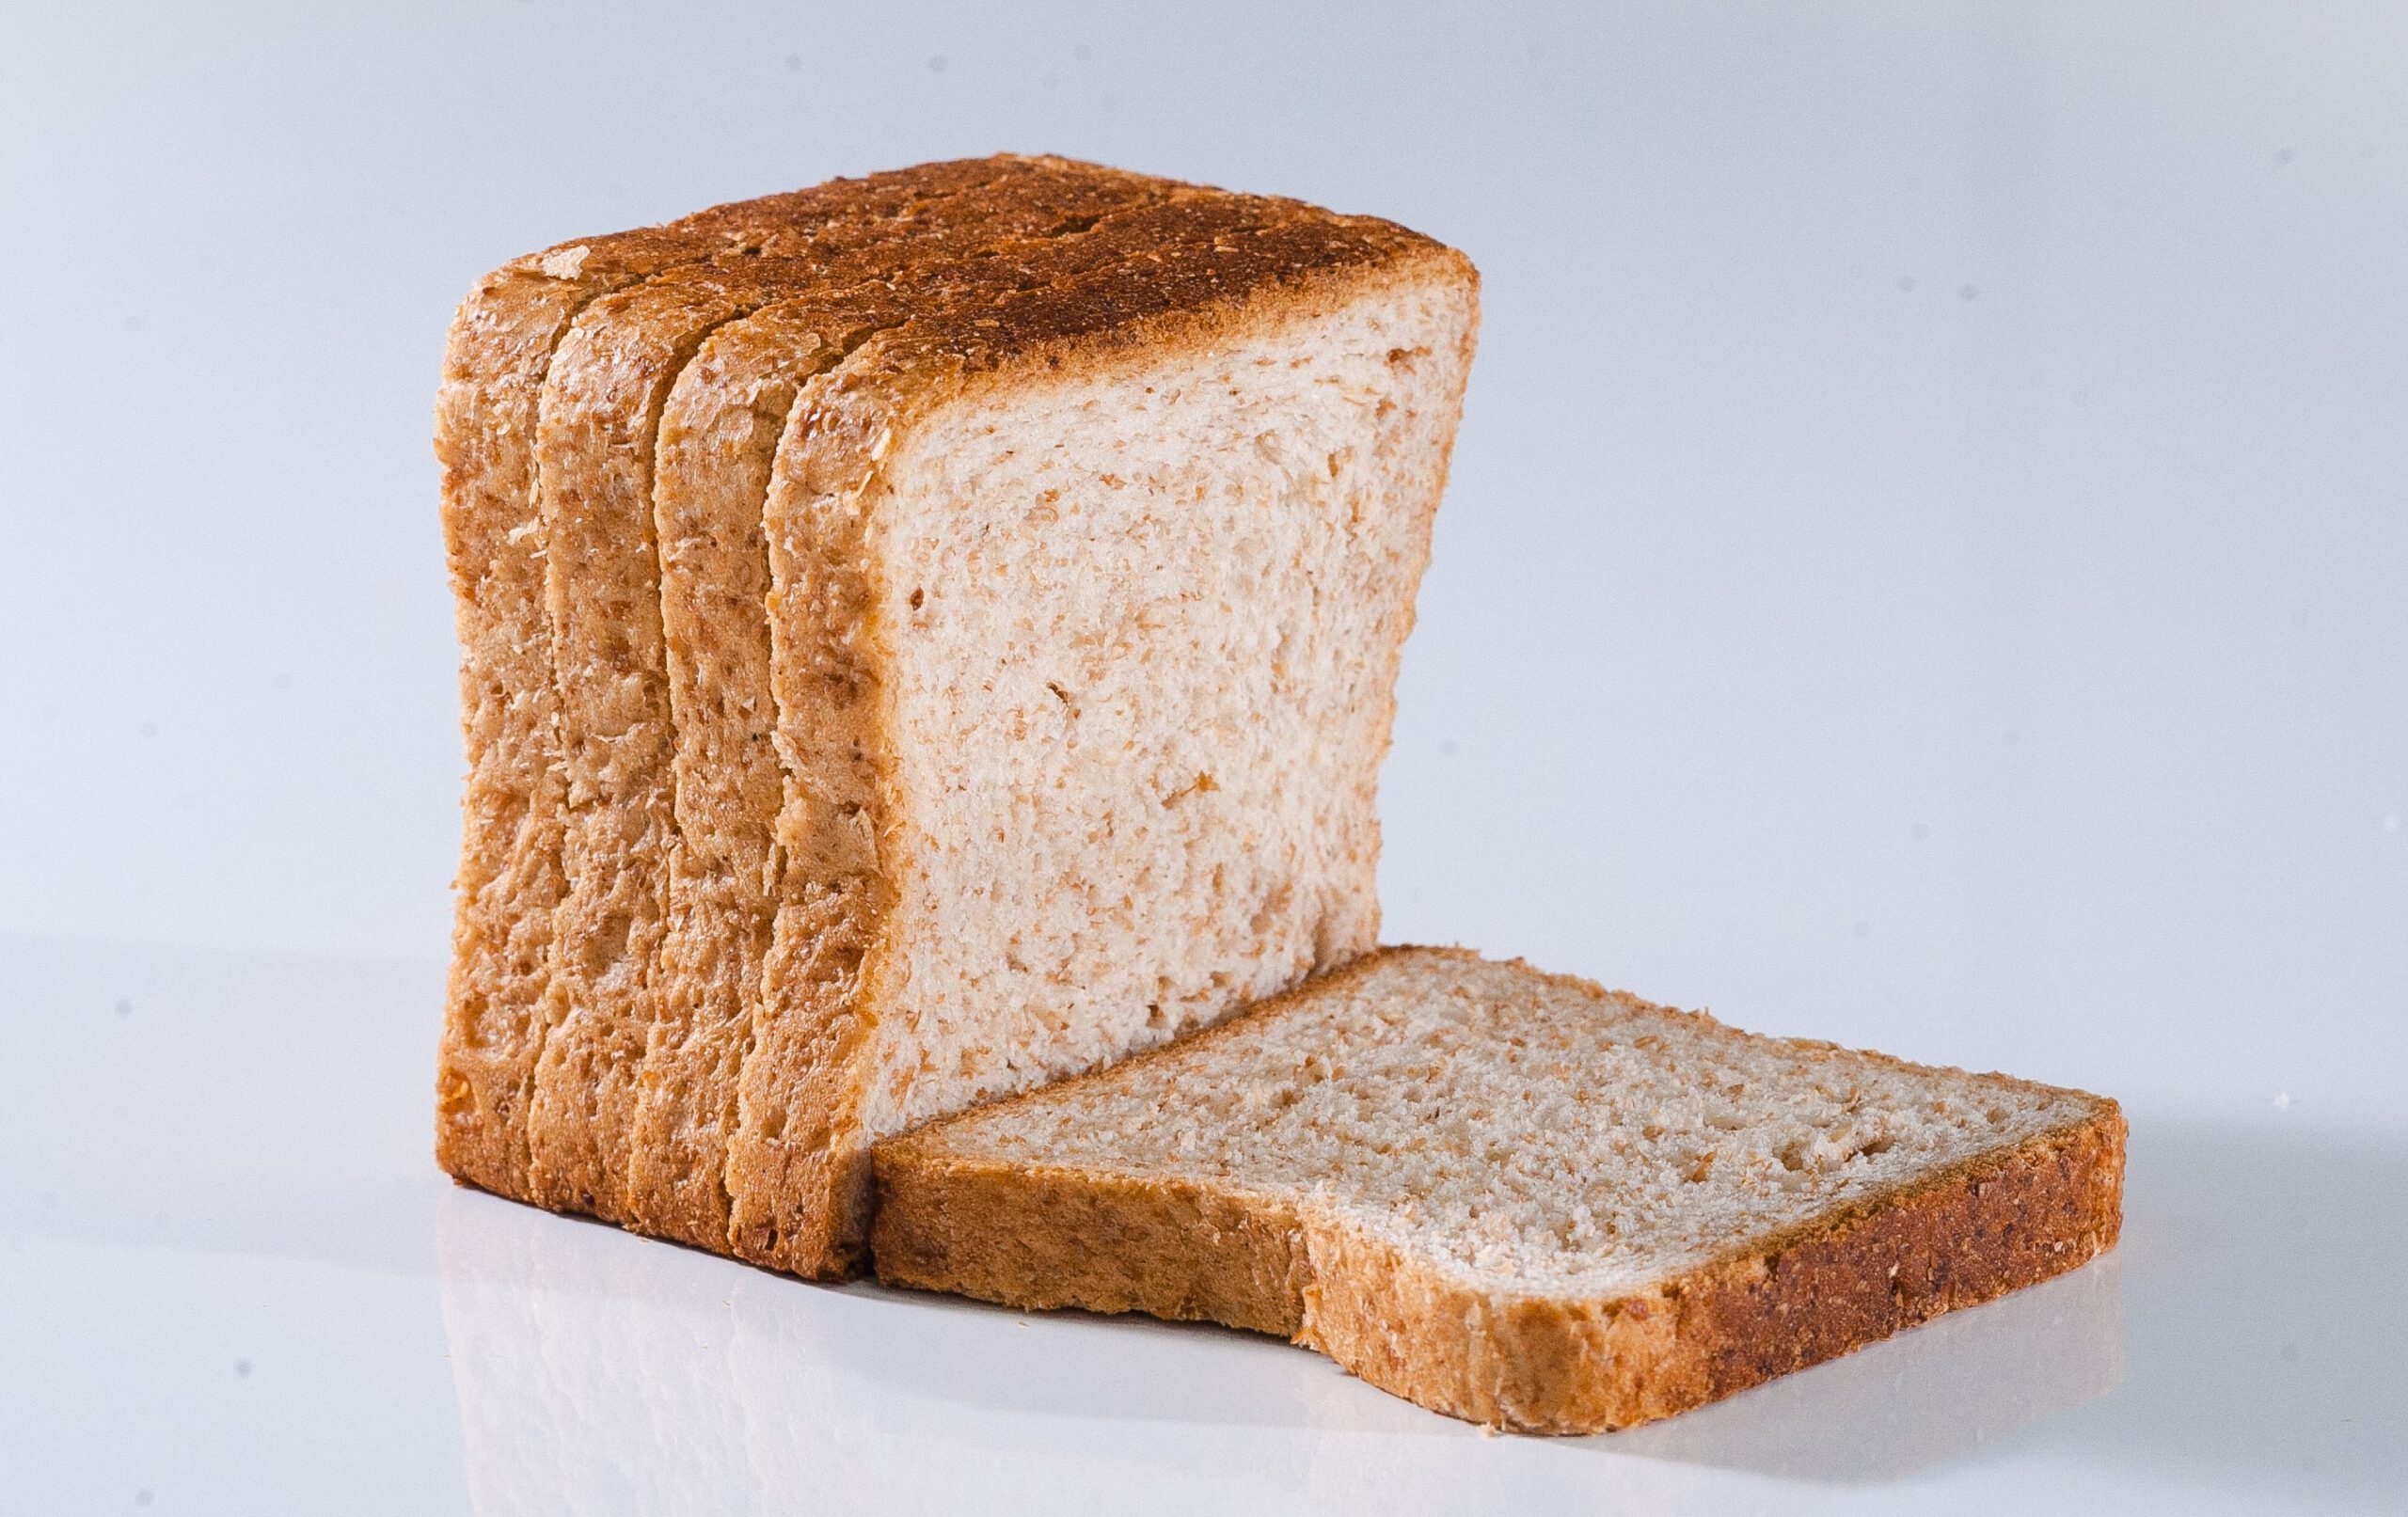 Пряный хлеб. Хлеб тостовый пшеничный отрубной. Хлеб с отрубями 22 хлебозавод. Хлеб тостовый ржаной. Хлеб отрубной формовой 400гр.